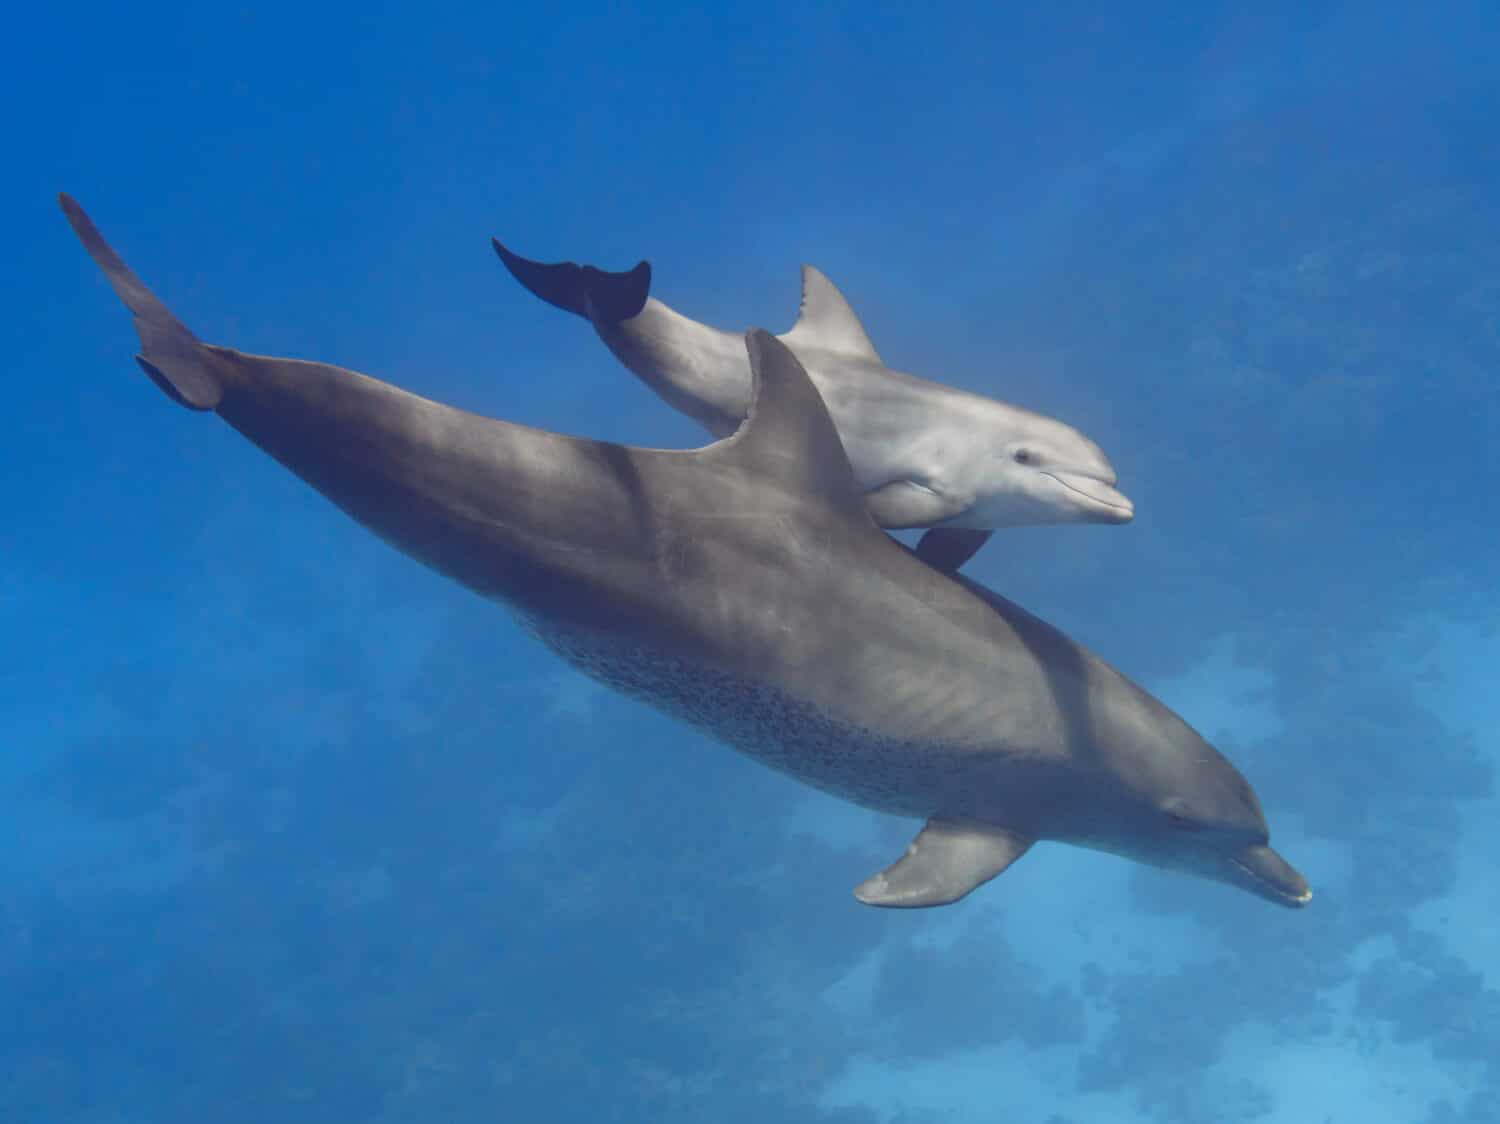 Pareja (padre e hijo) delfines nariz de botella salvajes nadando en el mar azul profundo cerca del arrecife de coral